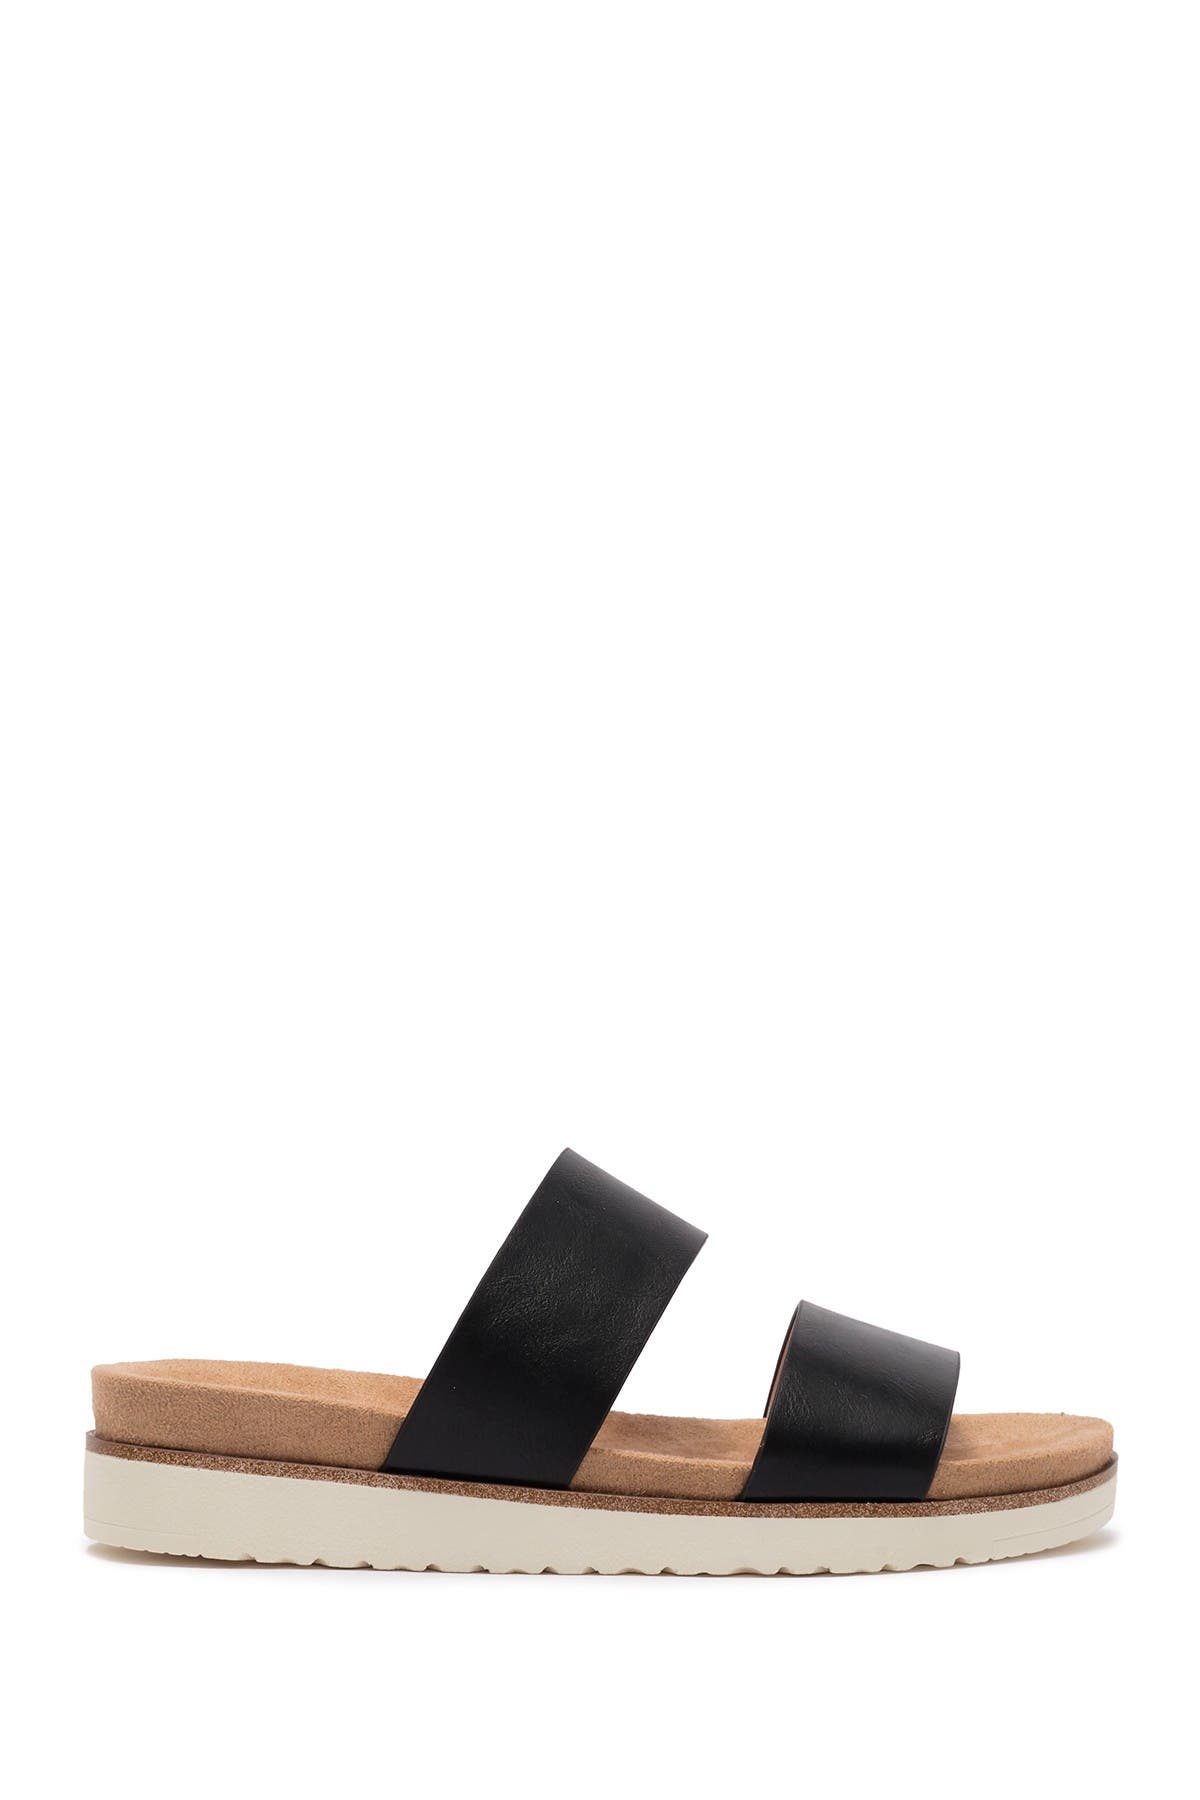 kensie dominic slide sandal